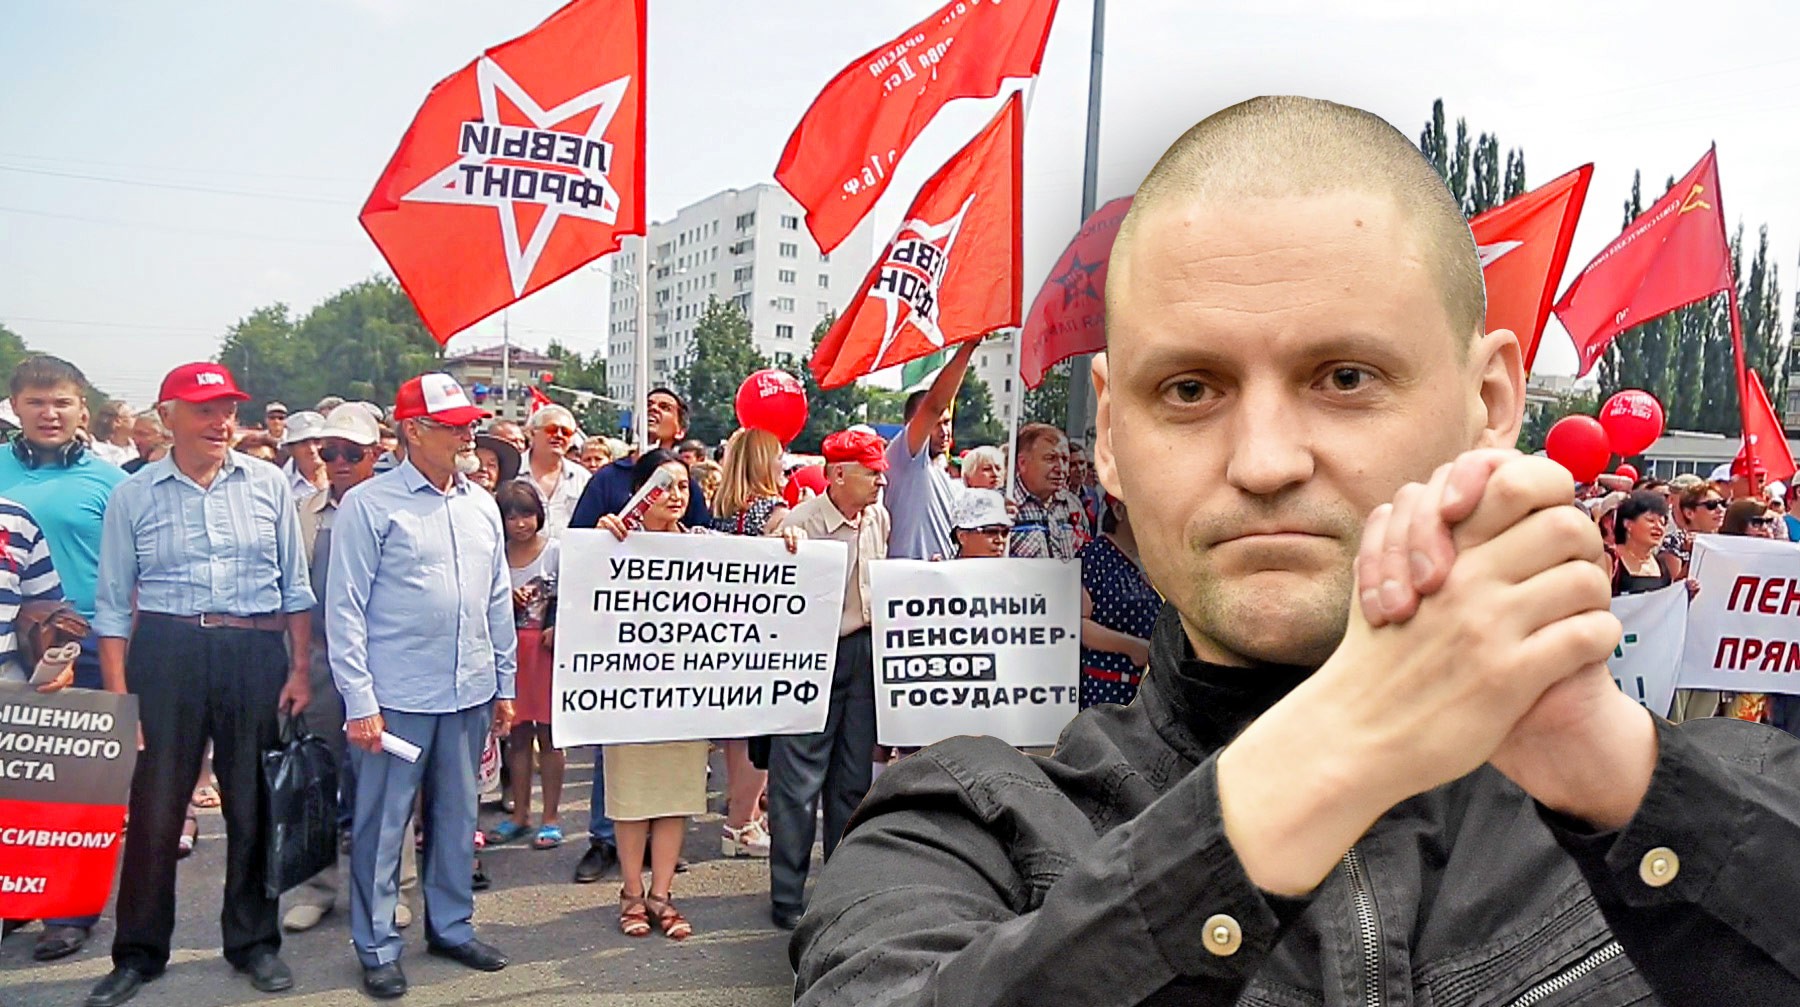 Dailystorm - Удальцов намерен взыскать с Путина миллион рублей морального ущерба из-за повышения пенсионного возраста